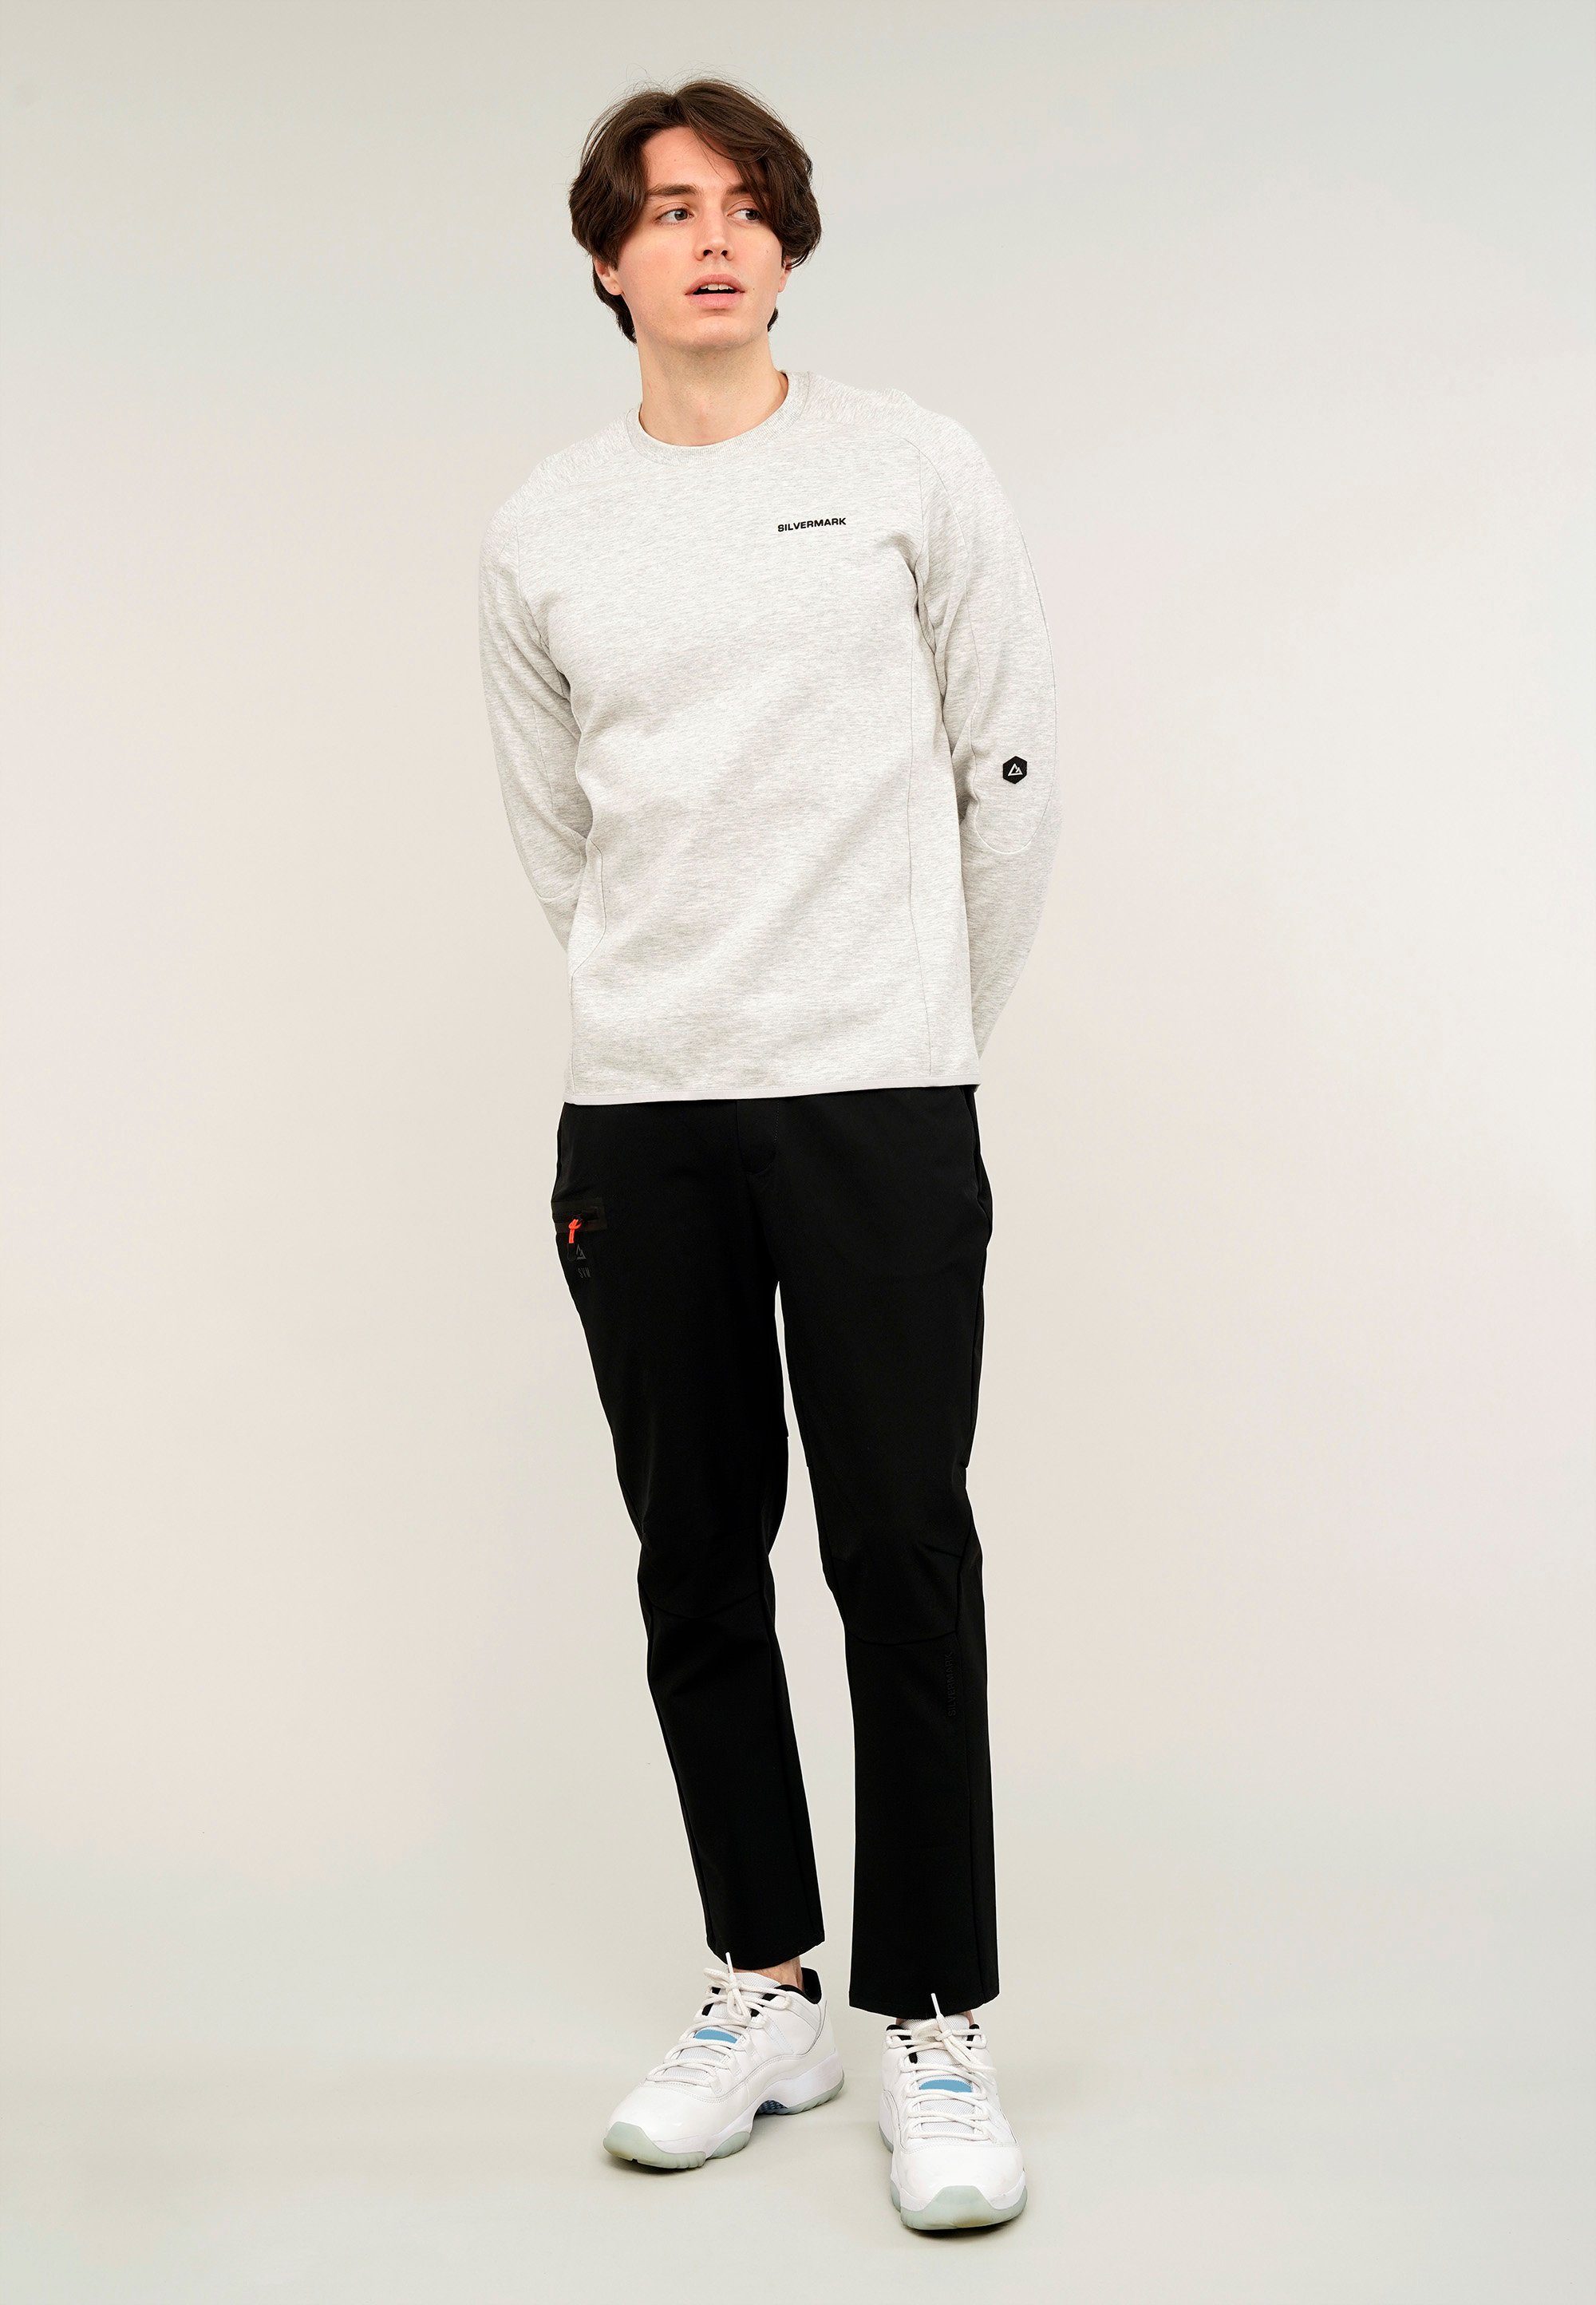 GIORDANO Sweatshirt Silvermark by G-Motion hellgrau praktischen mit Rückentaschen